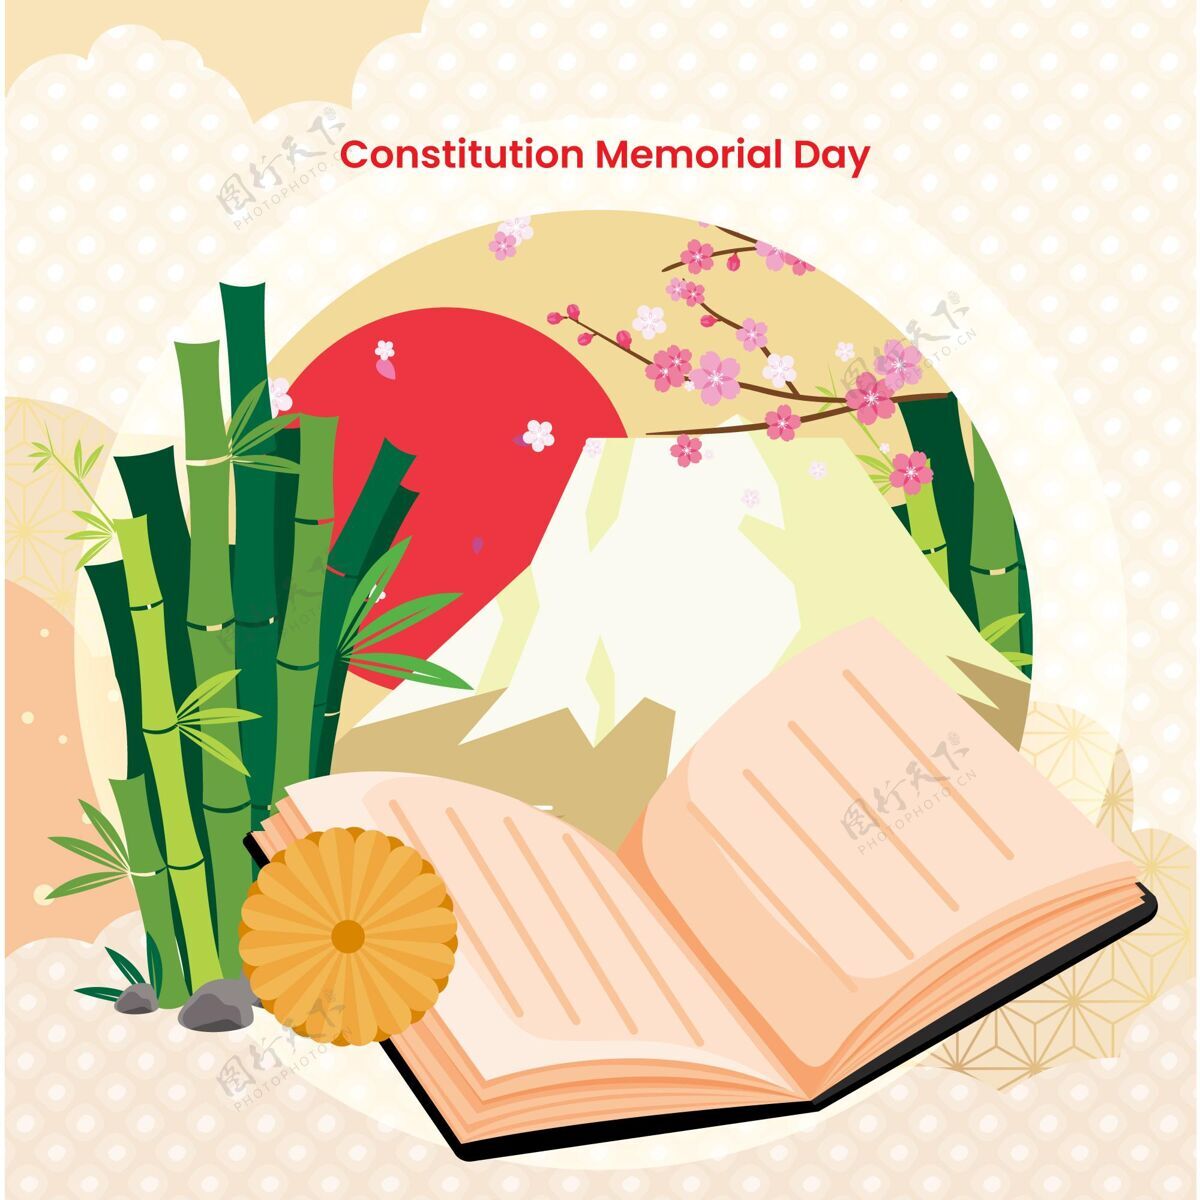 宪法纪念日日本宪法阵亡将士纪念日插图事件宪法阵亡将士纪念日